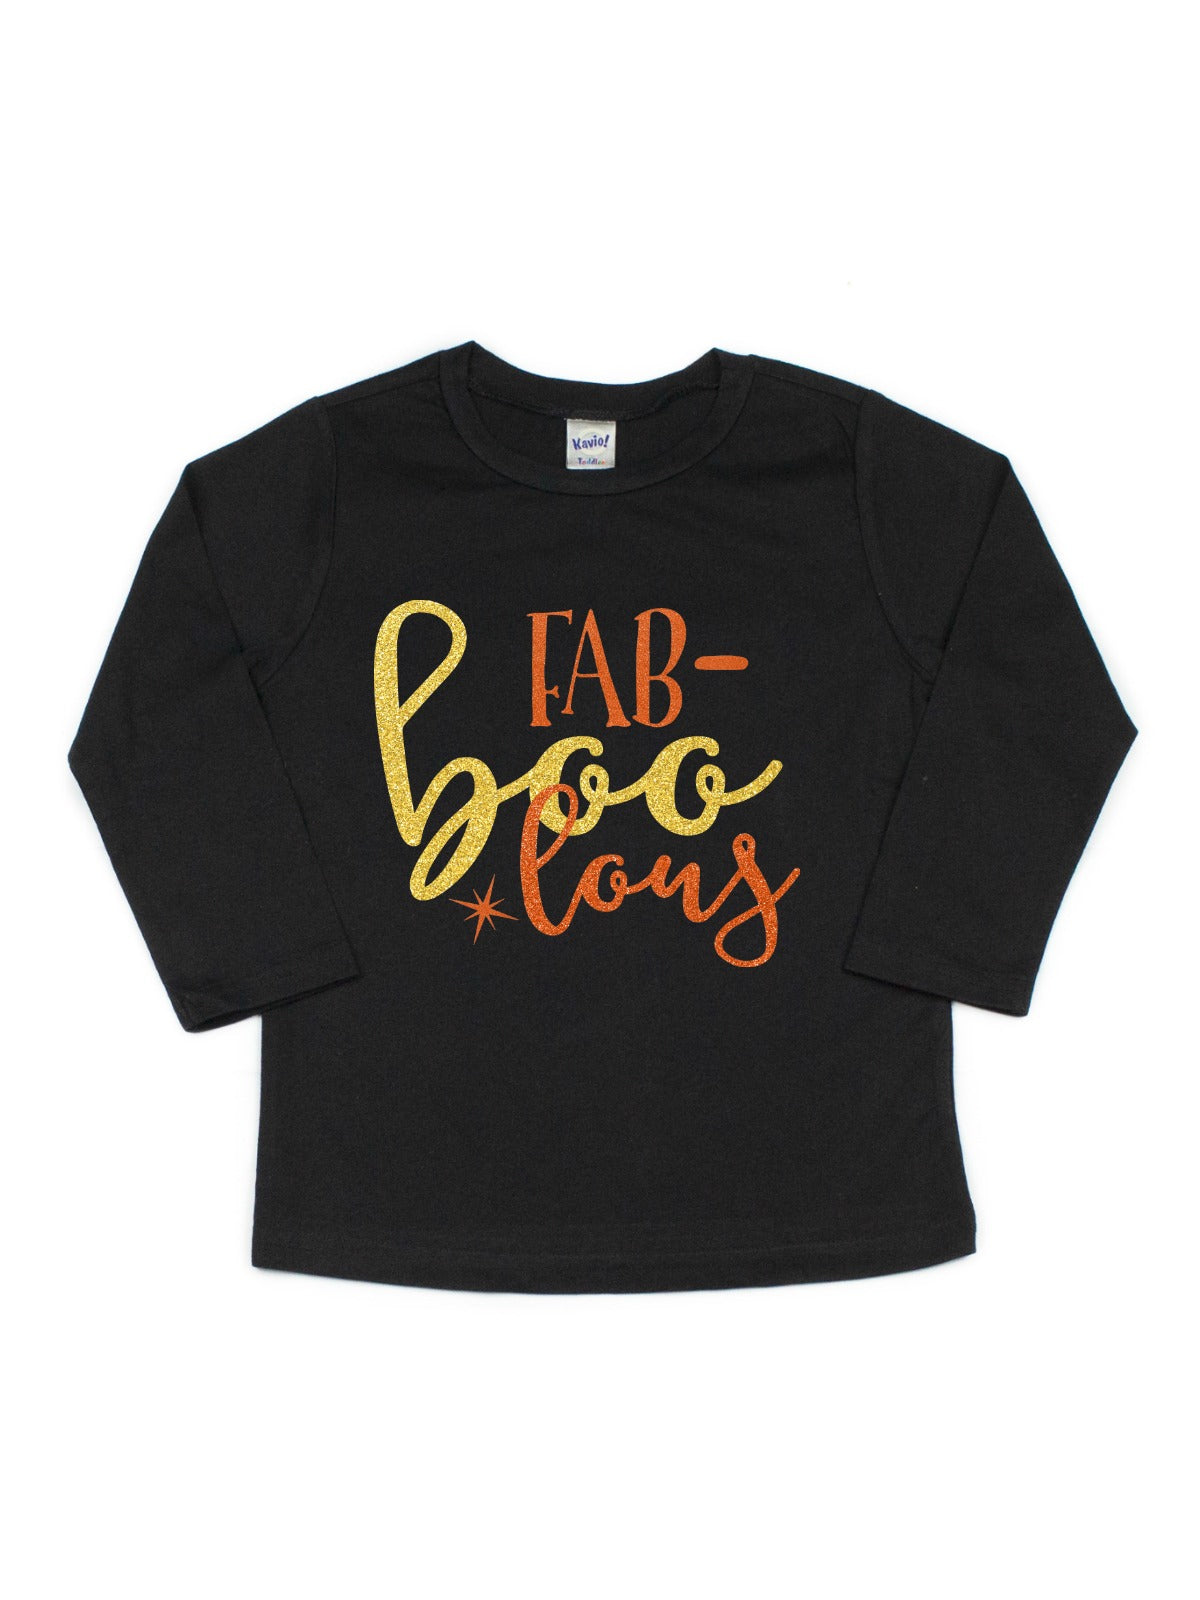 fabBOOlous girls sparkle halloween shirt